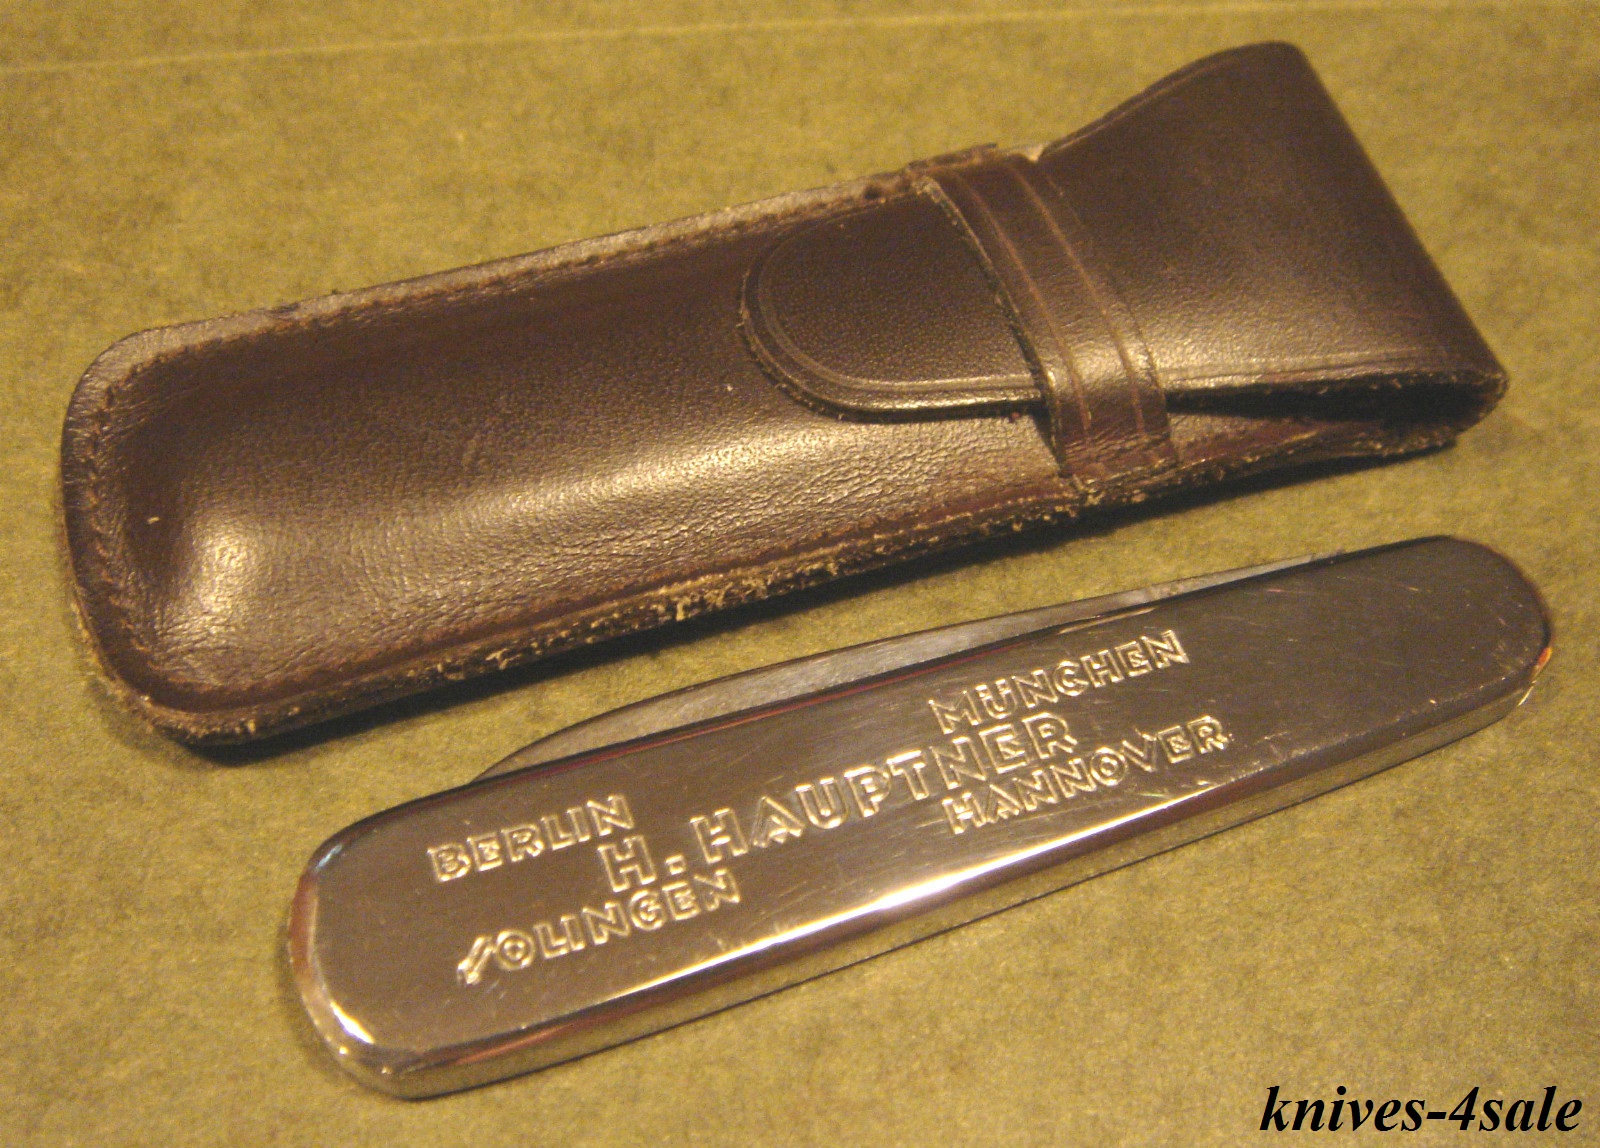 knives-4sale: Hauptner Instrument Surgical Tool Gent Vintage German ...